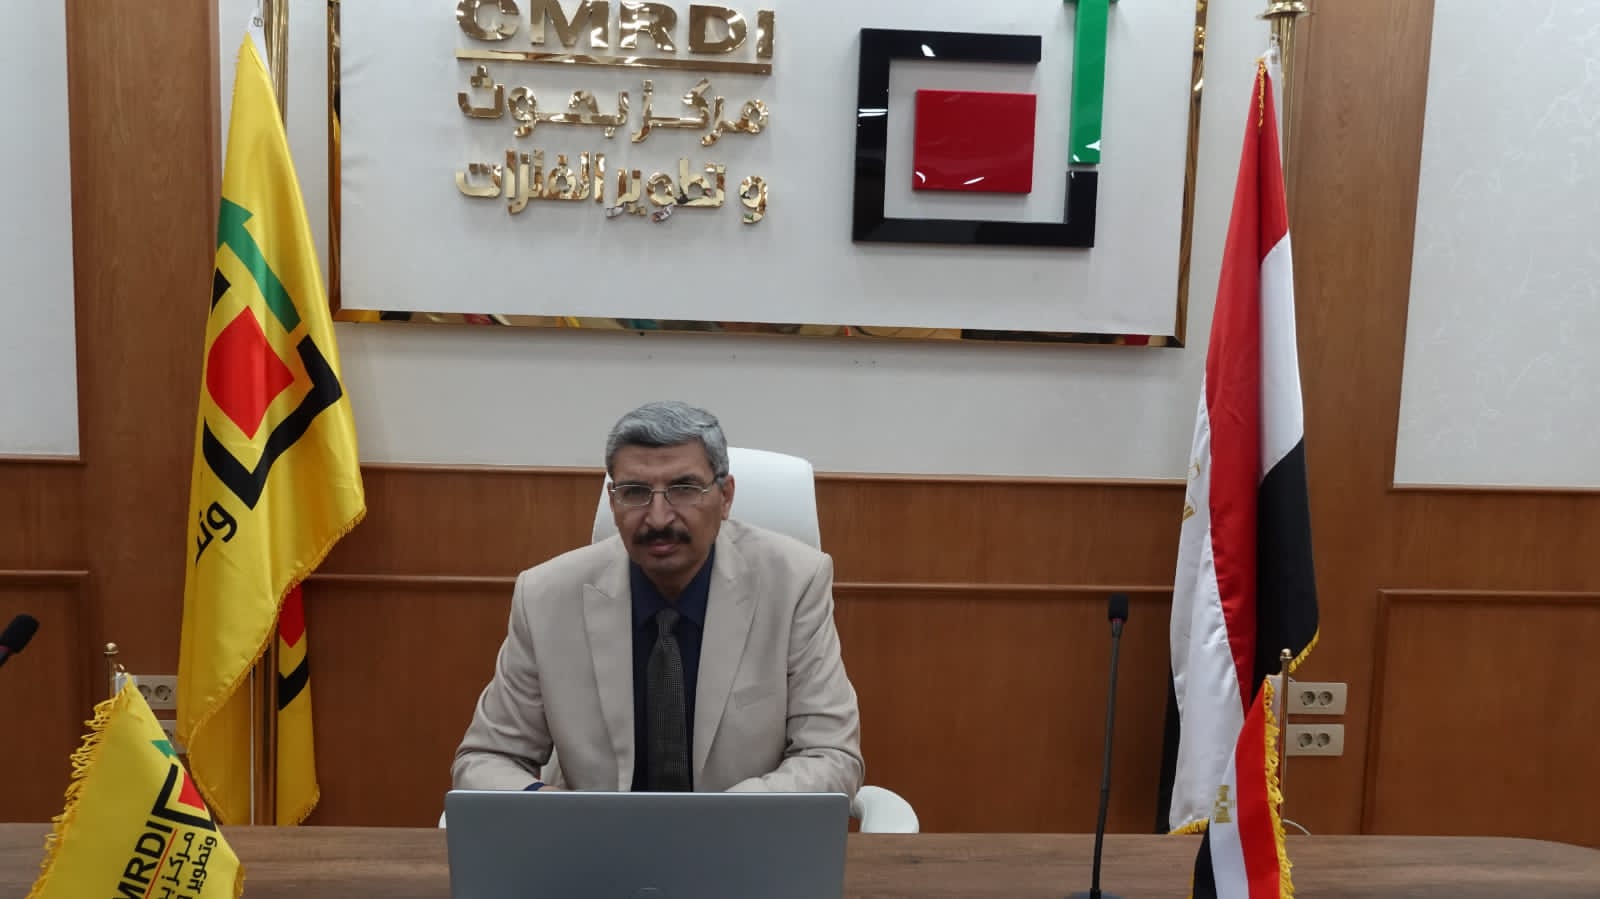 د. عماد عويس - رئيس مركز بحوث وتطوير الفلزات